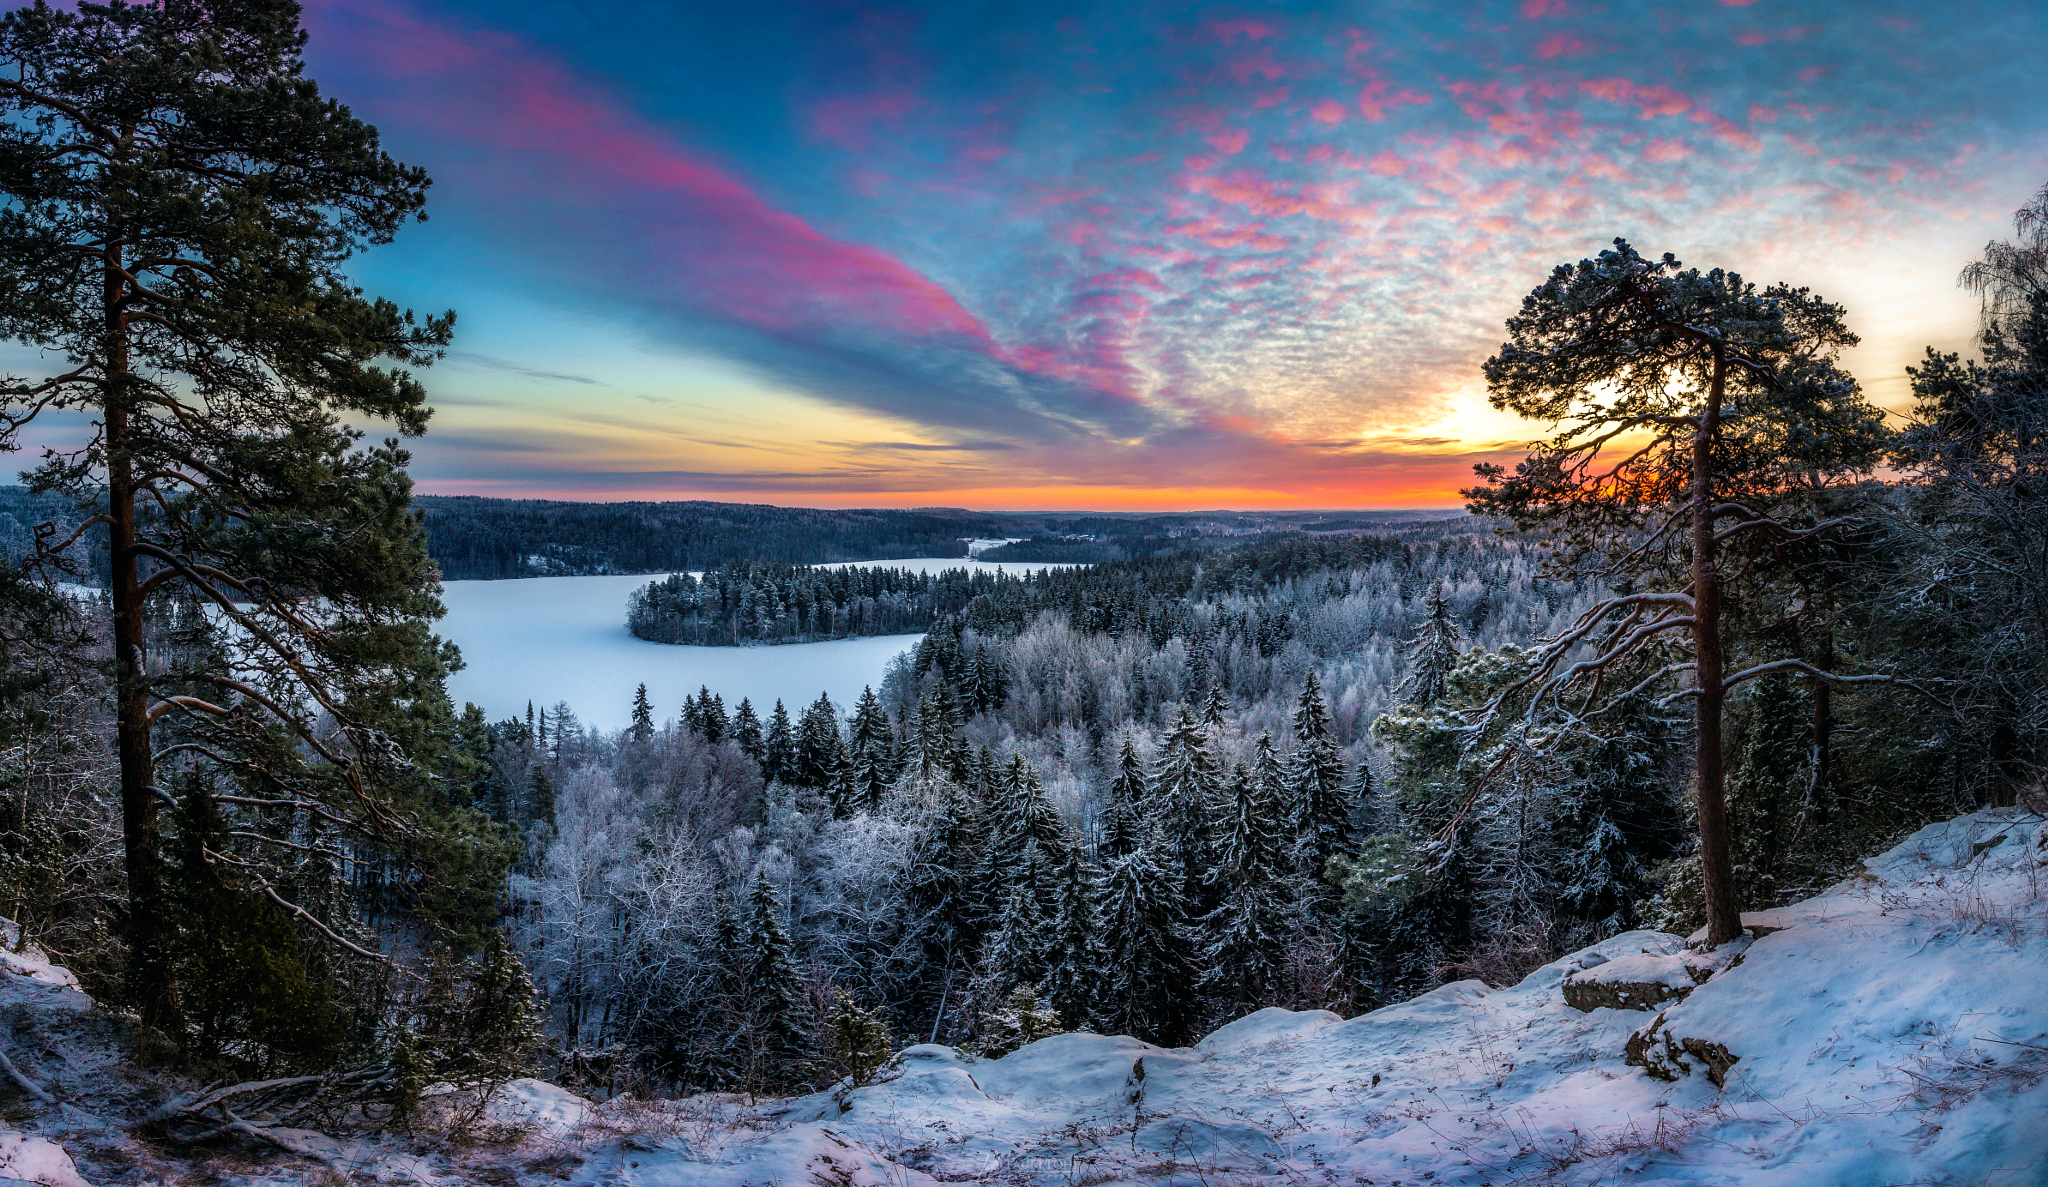 Скачать обои бесплатно Зима, Снег, Озеро, Лес, Дерево, Земля/природа, Закат Солнца картинка на рабочий стол ПК